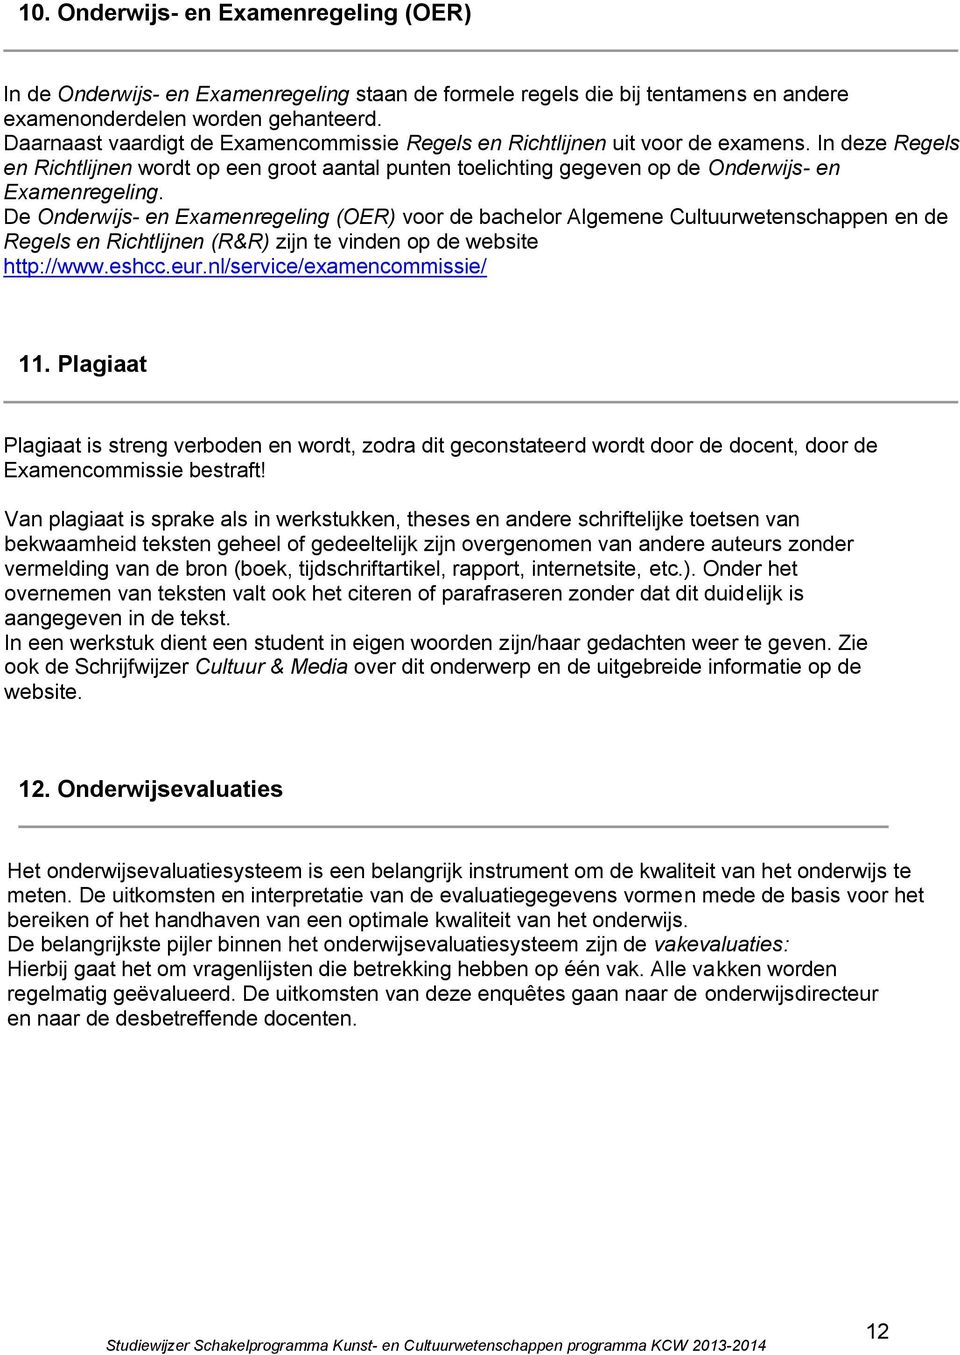 De Onderwijs- en Examenregeling (OER) voor de bachelor Algemene Cultuurwetenschappen en de Regels en Richtlijnen (R&R) zijn te vinden op de website http://www.eshcc.eur.nl/service/examencommissie/ 11.